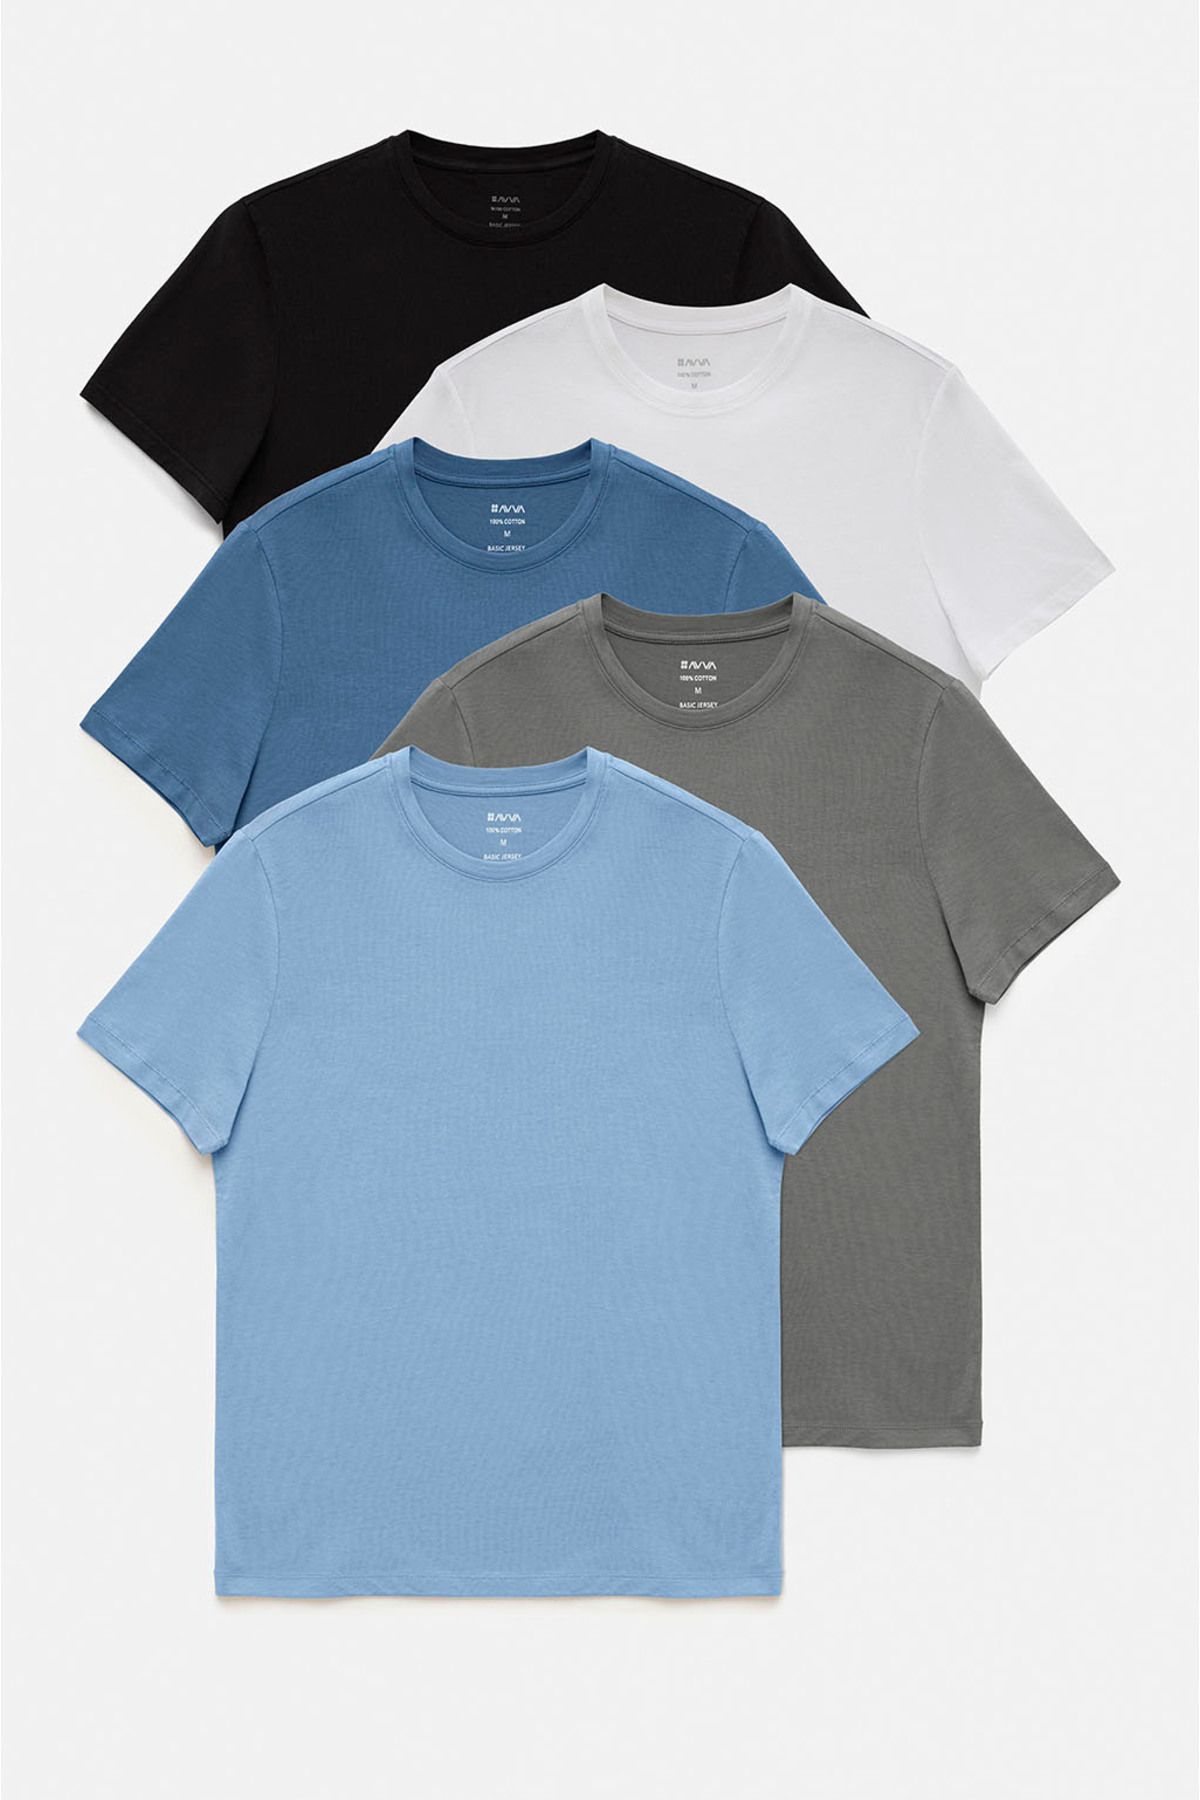 Avva Erkek Beyaz-siyah-gri-açık Mavi-koyu Mavi 5'li %100 Pamuk Bisiklet Yaka Regular Fit T-shirt E001021